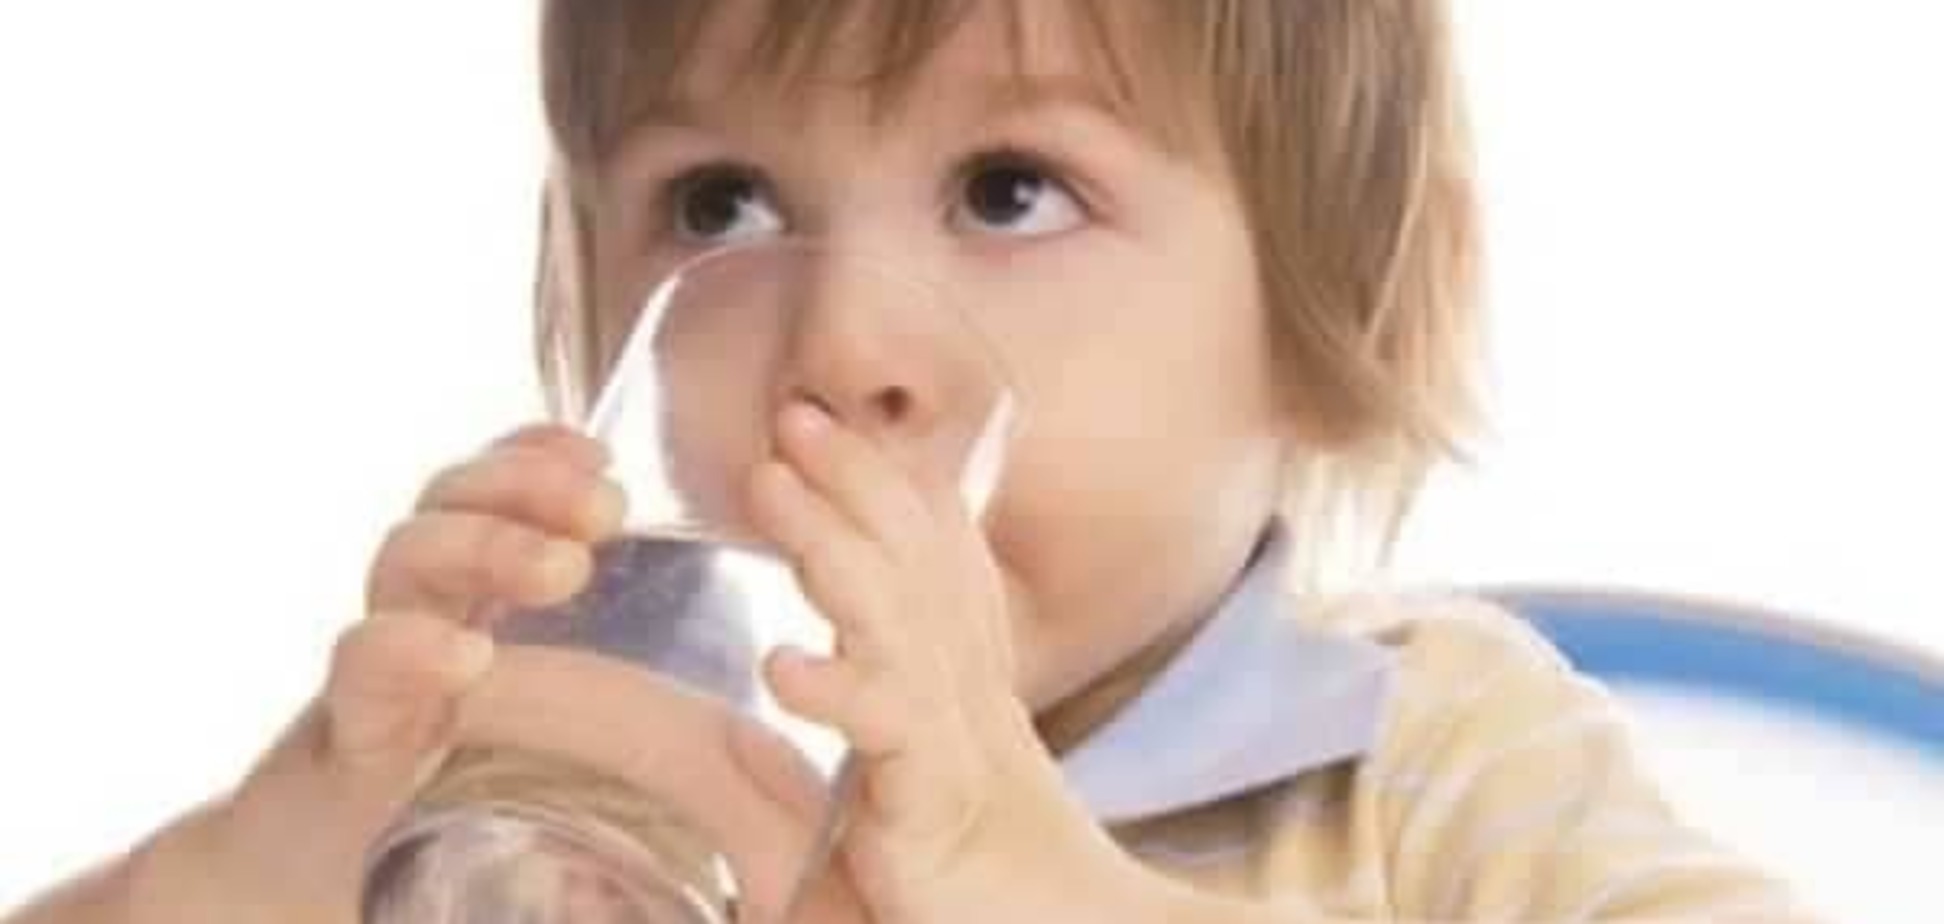 Как сделать, чтобы ребенок пил больше воды